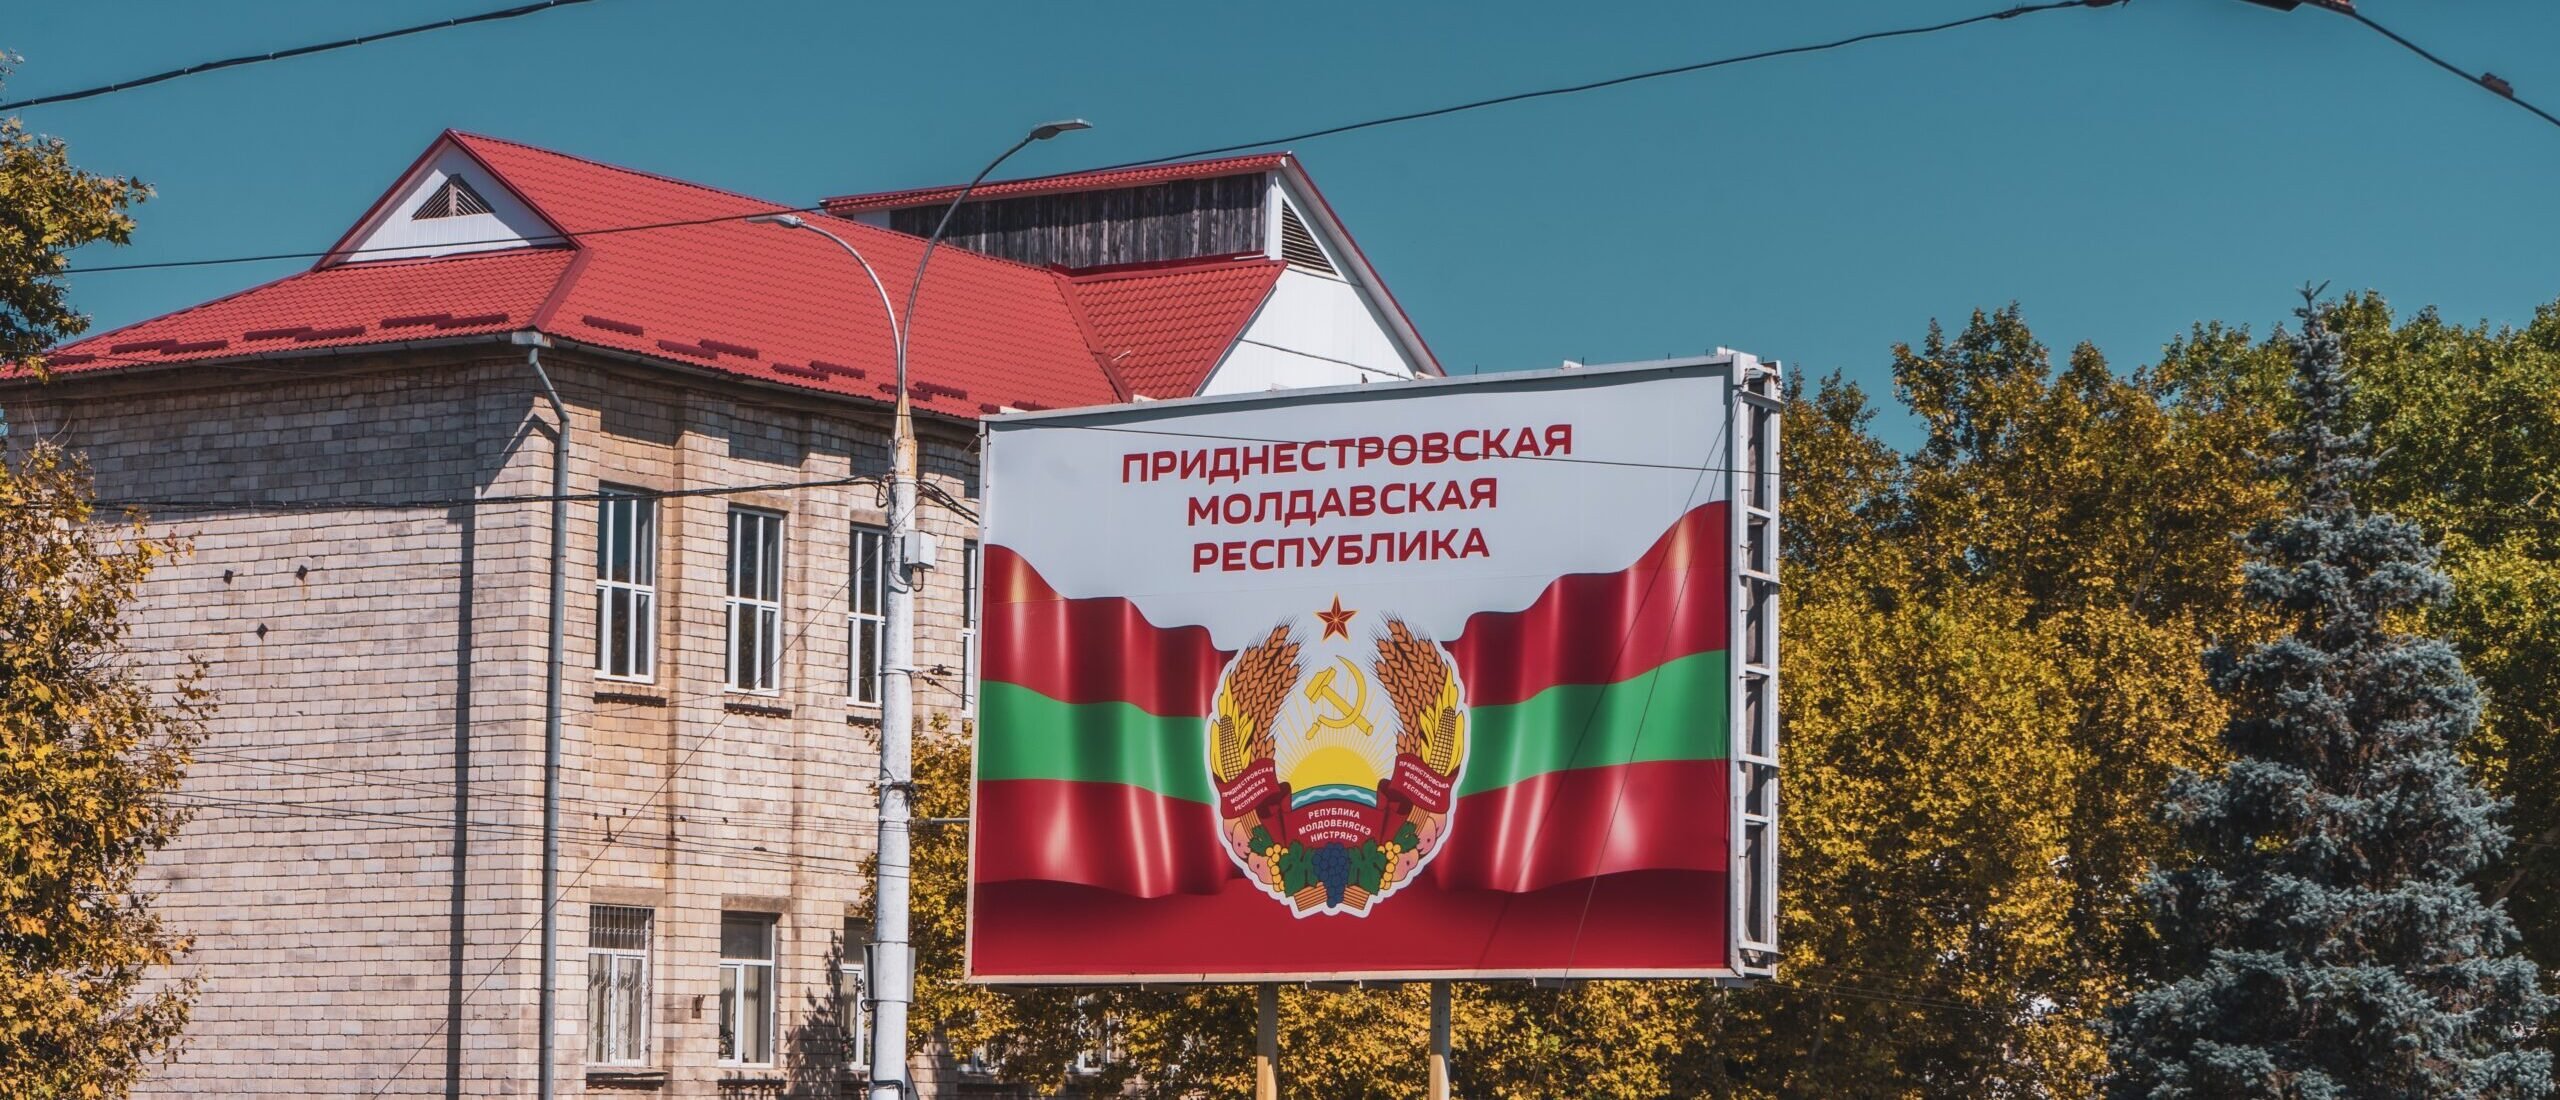 Чи анексує Росія частину Молдови: позиція української громади